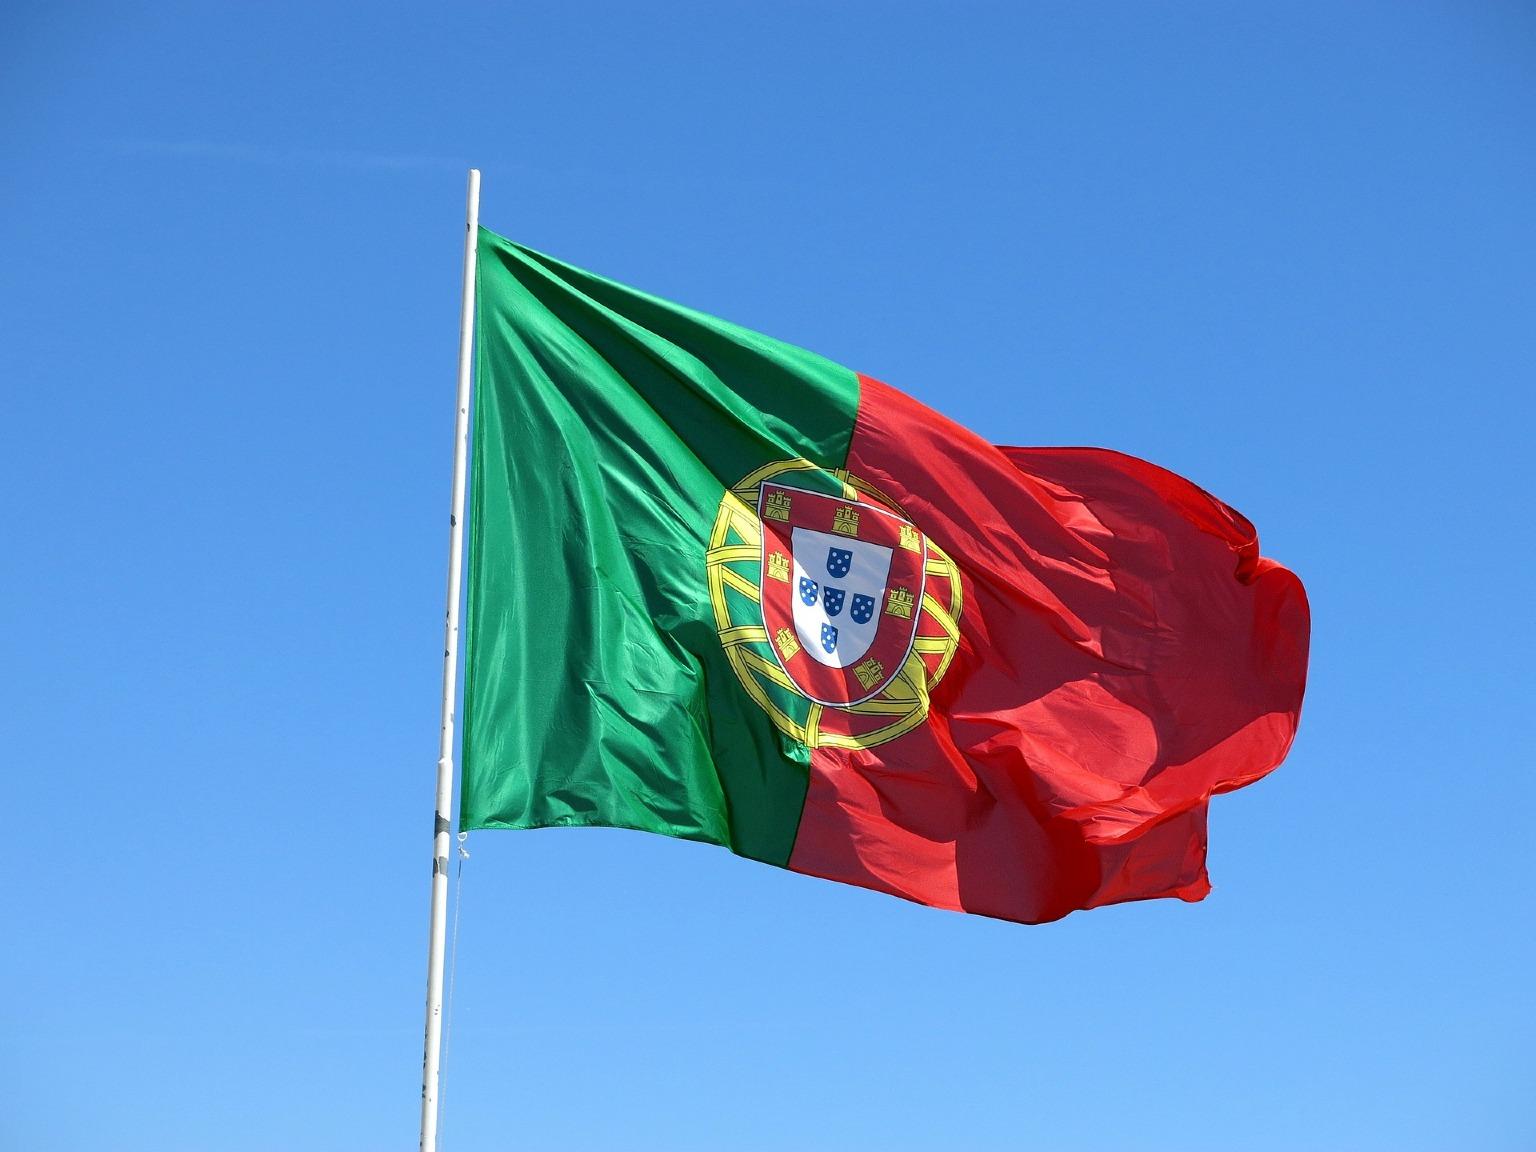 Bandera de Portugal ondeando sobre un fondo de cielo azul. Celebración del Día de Portugal y de la unidad del pueblo portugués.